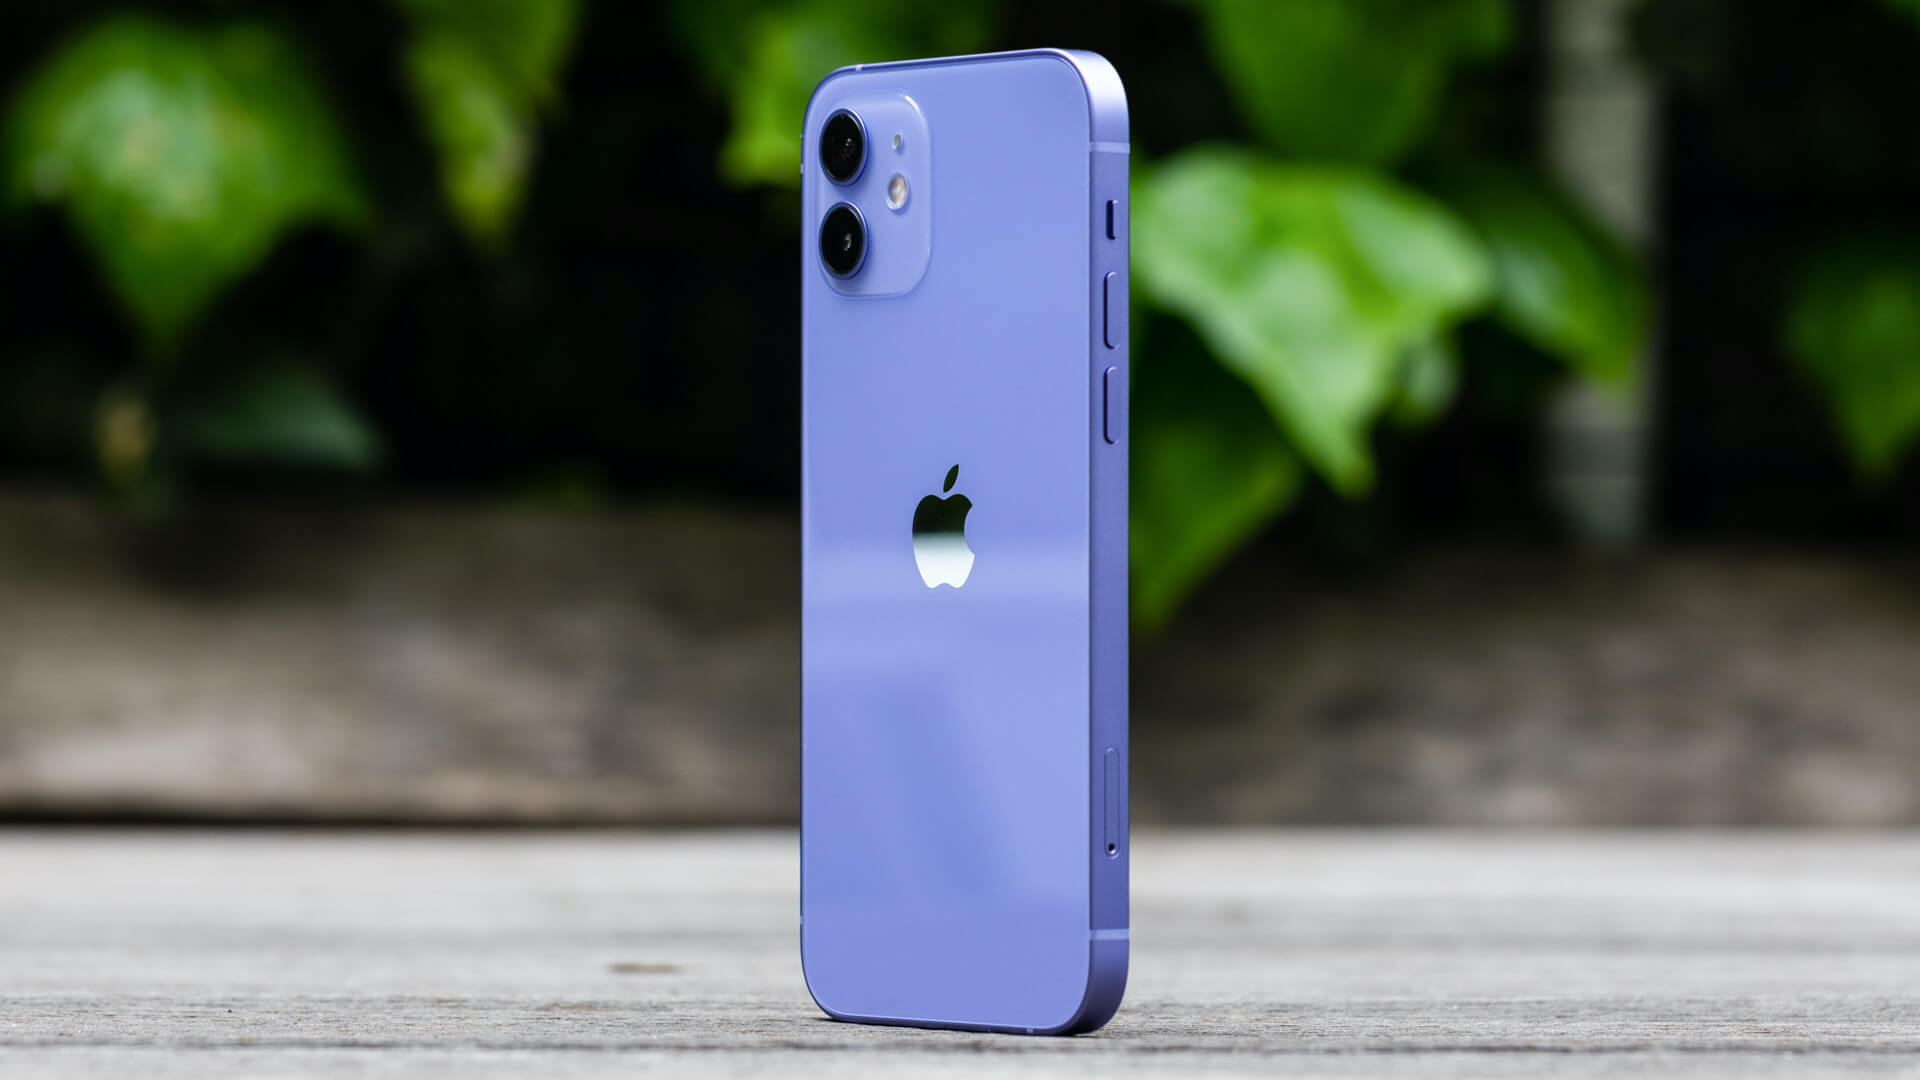 Фиолетовый iPhone 12